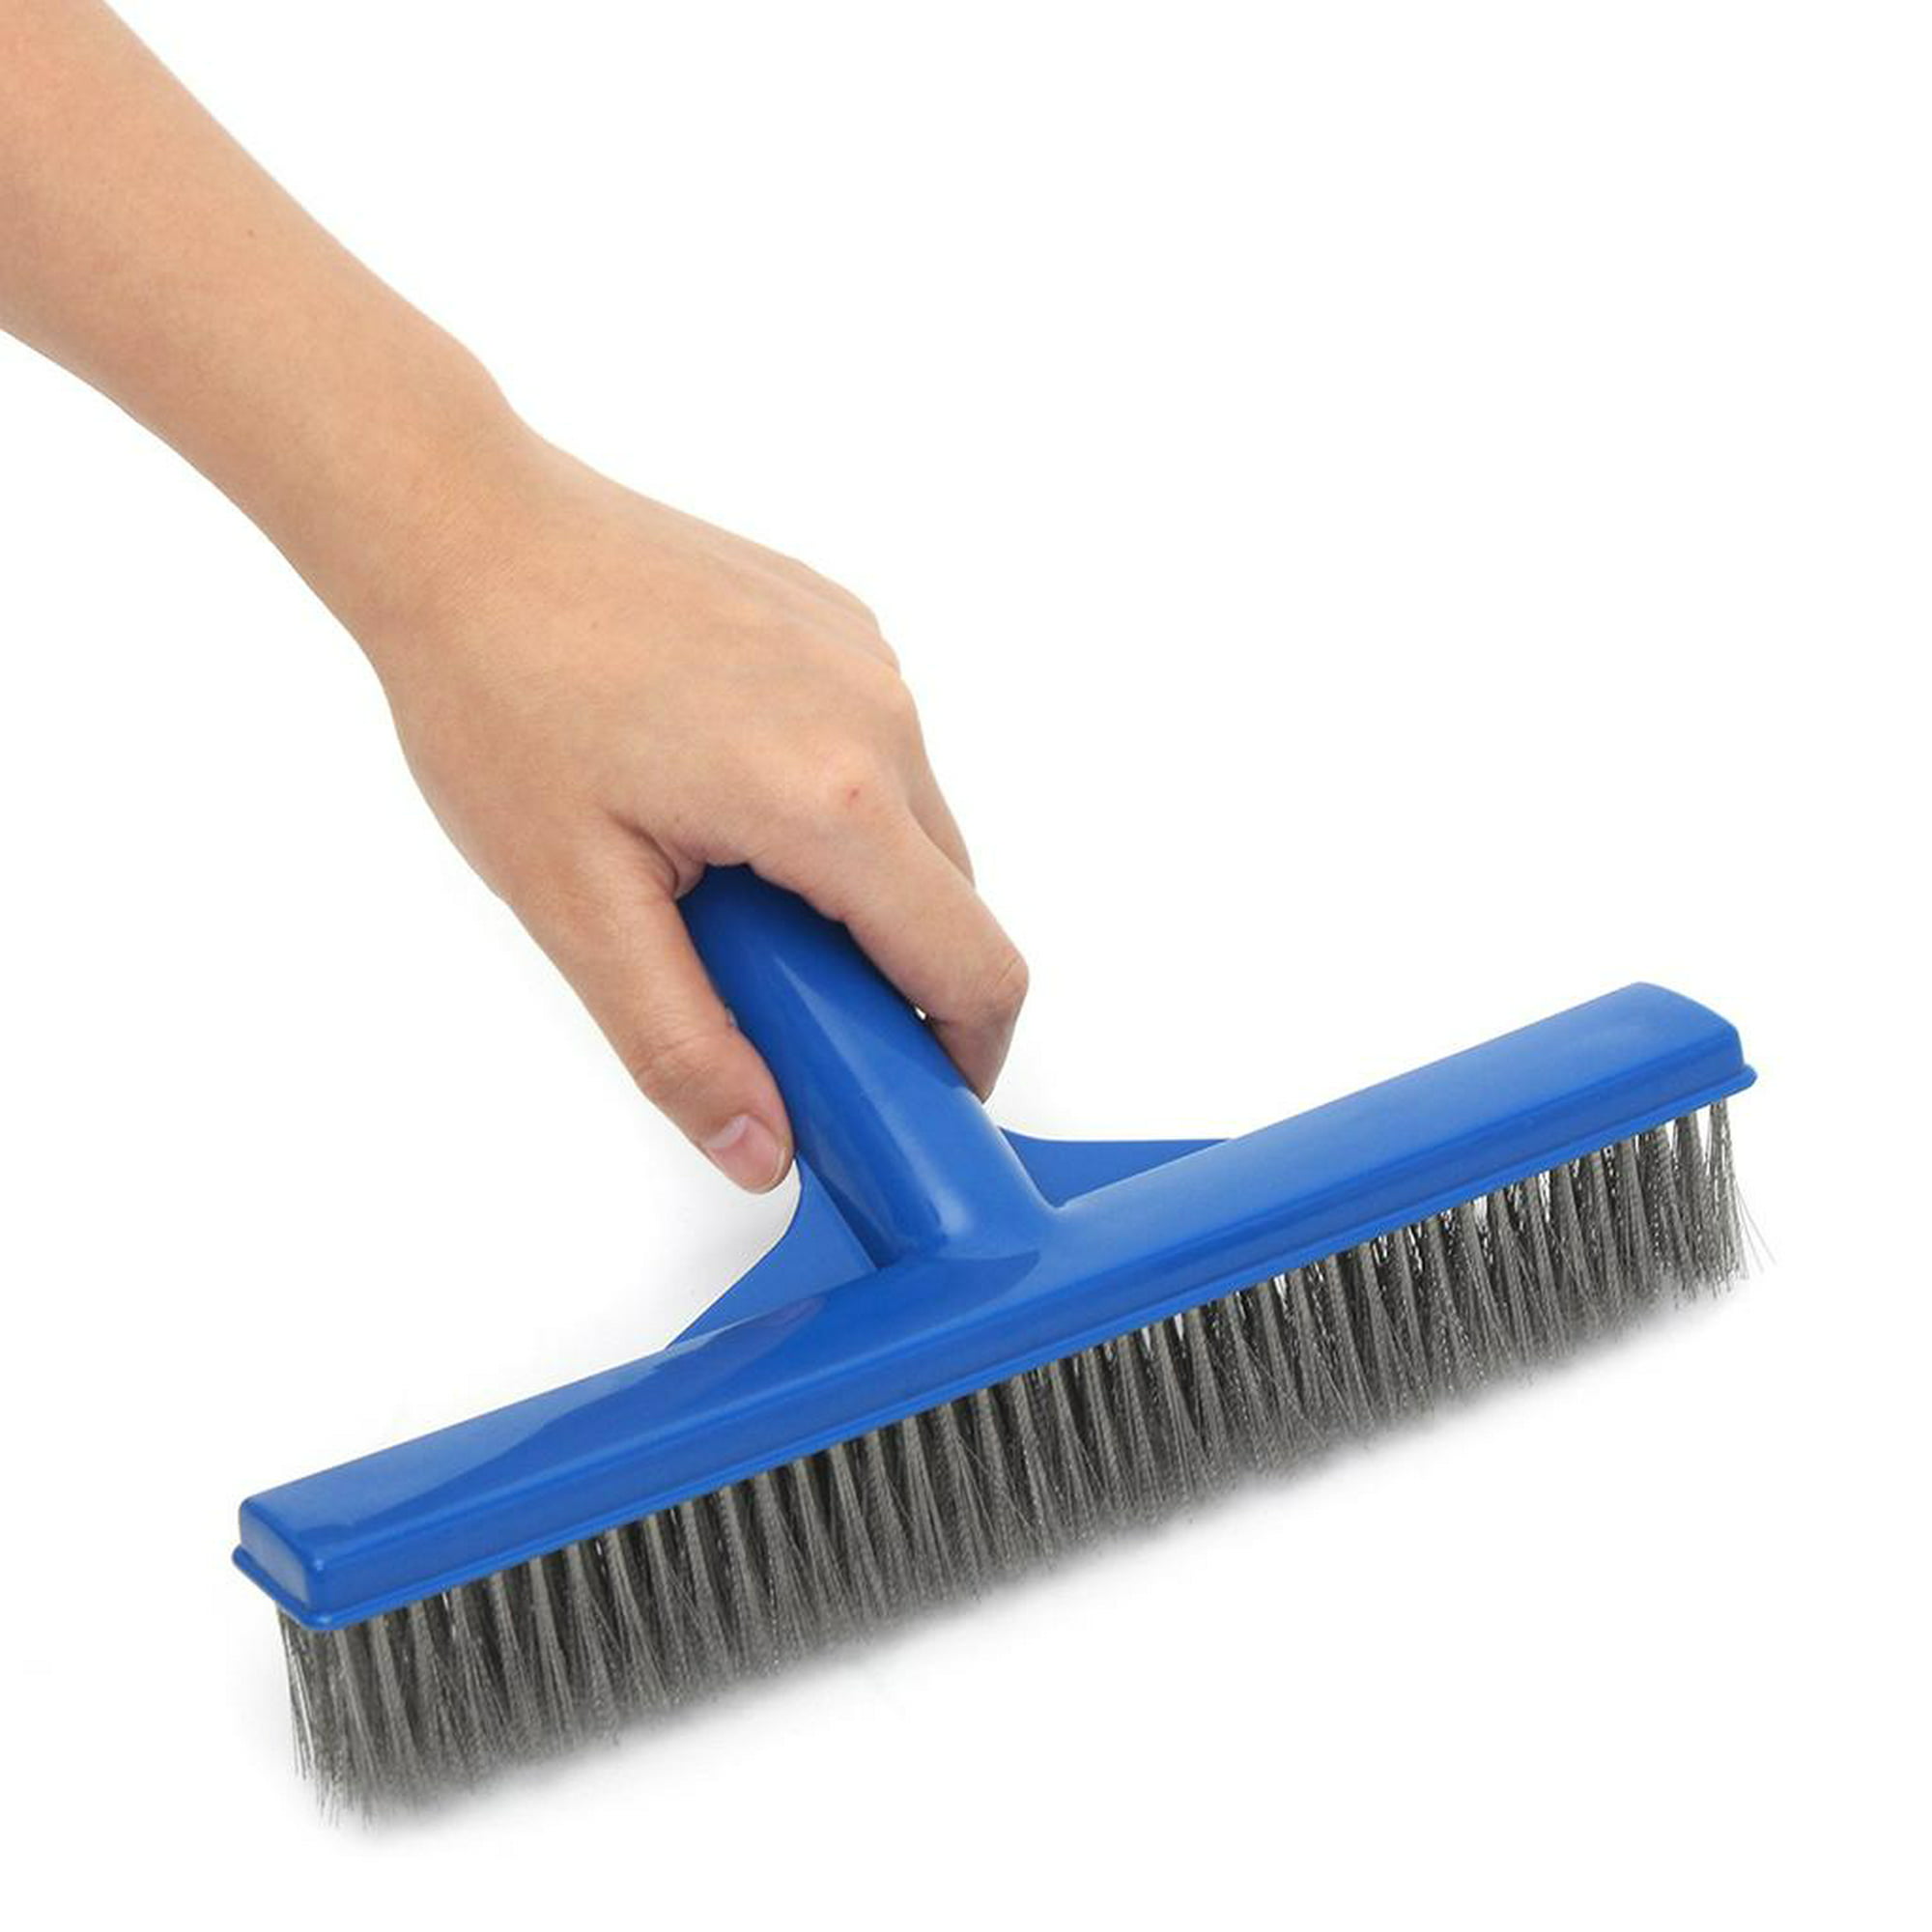 Cepillo de limpieza , cepillo de fregado para piscina, cepillo de limpieza  hogar, cepillo para lavar Sunnimix cepillo de limpieza